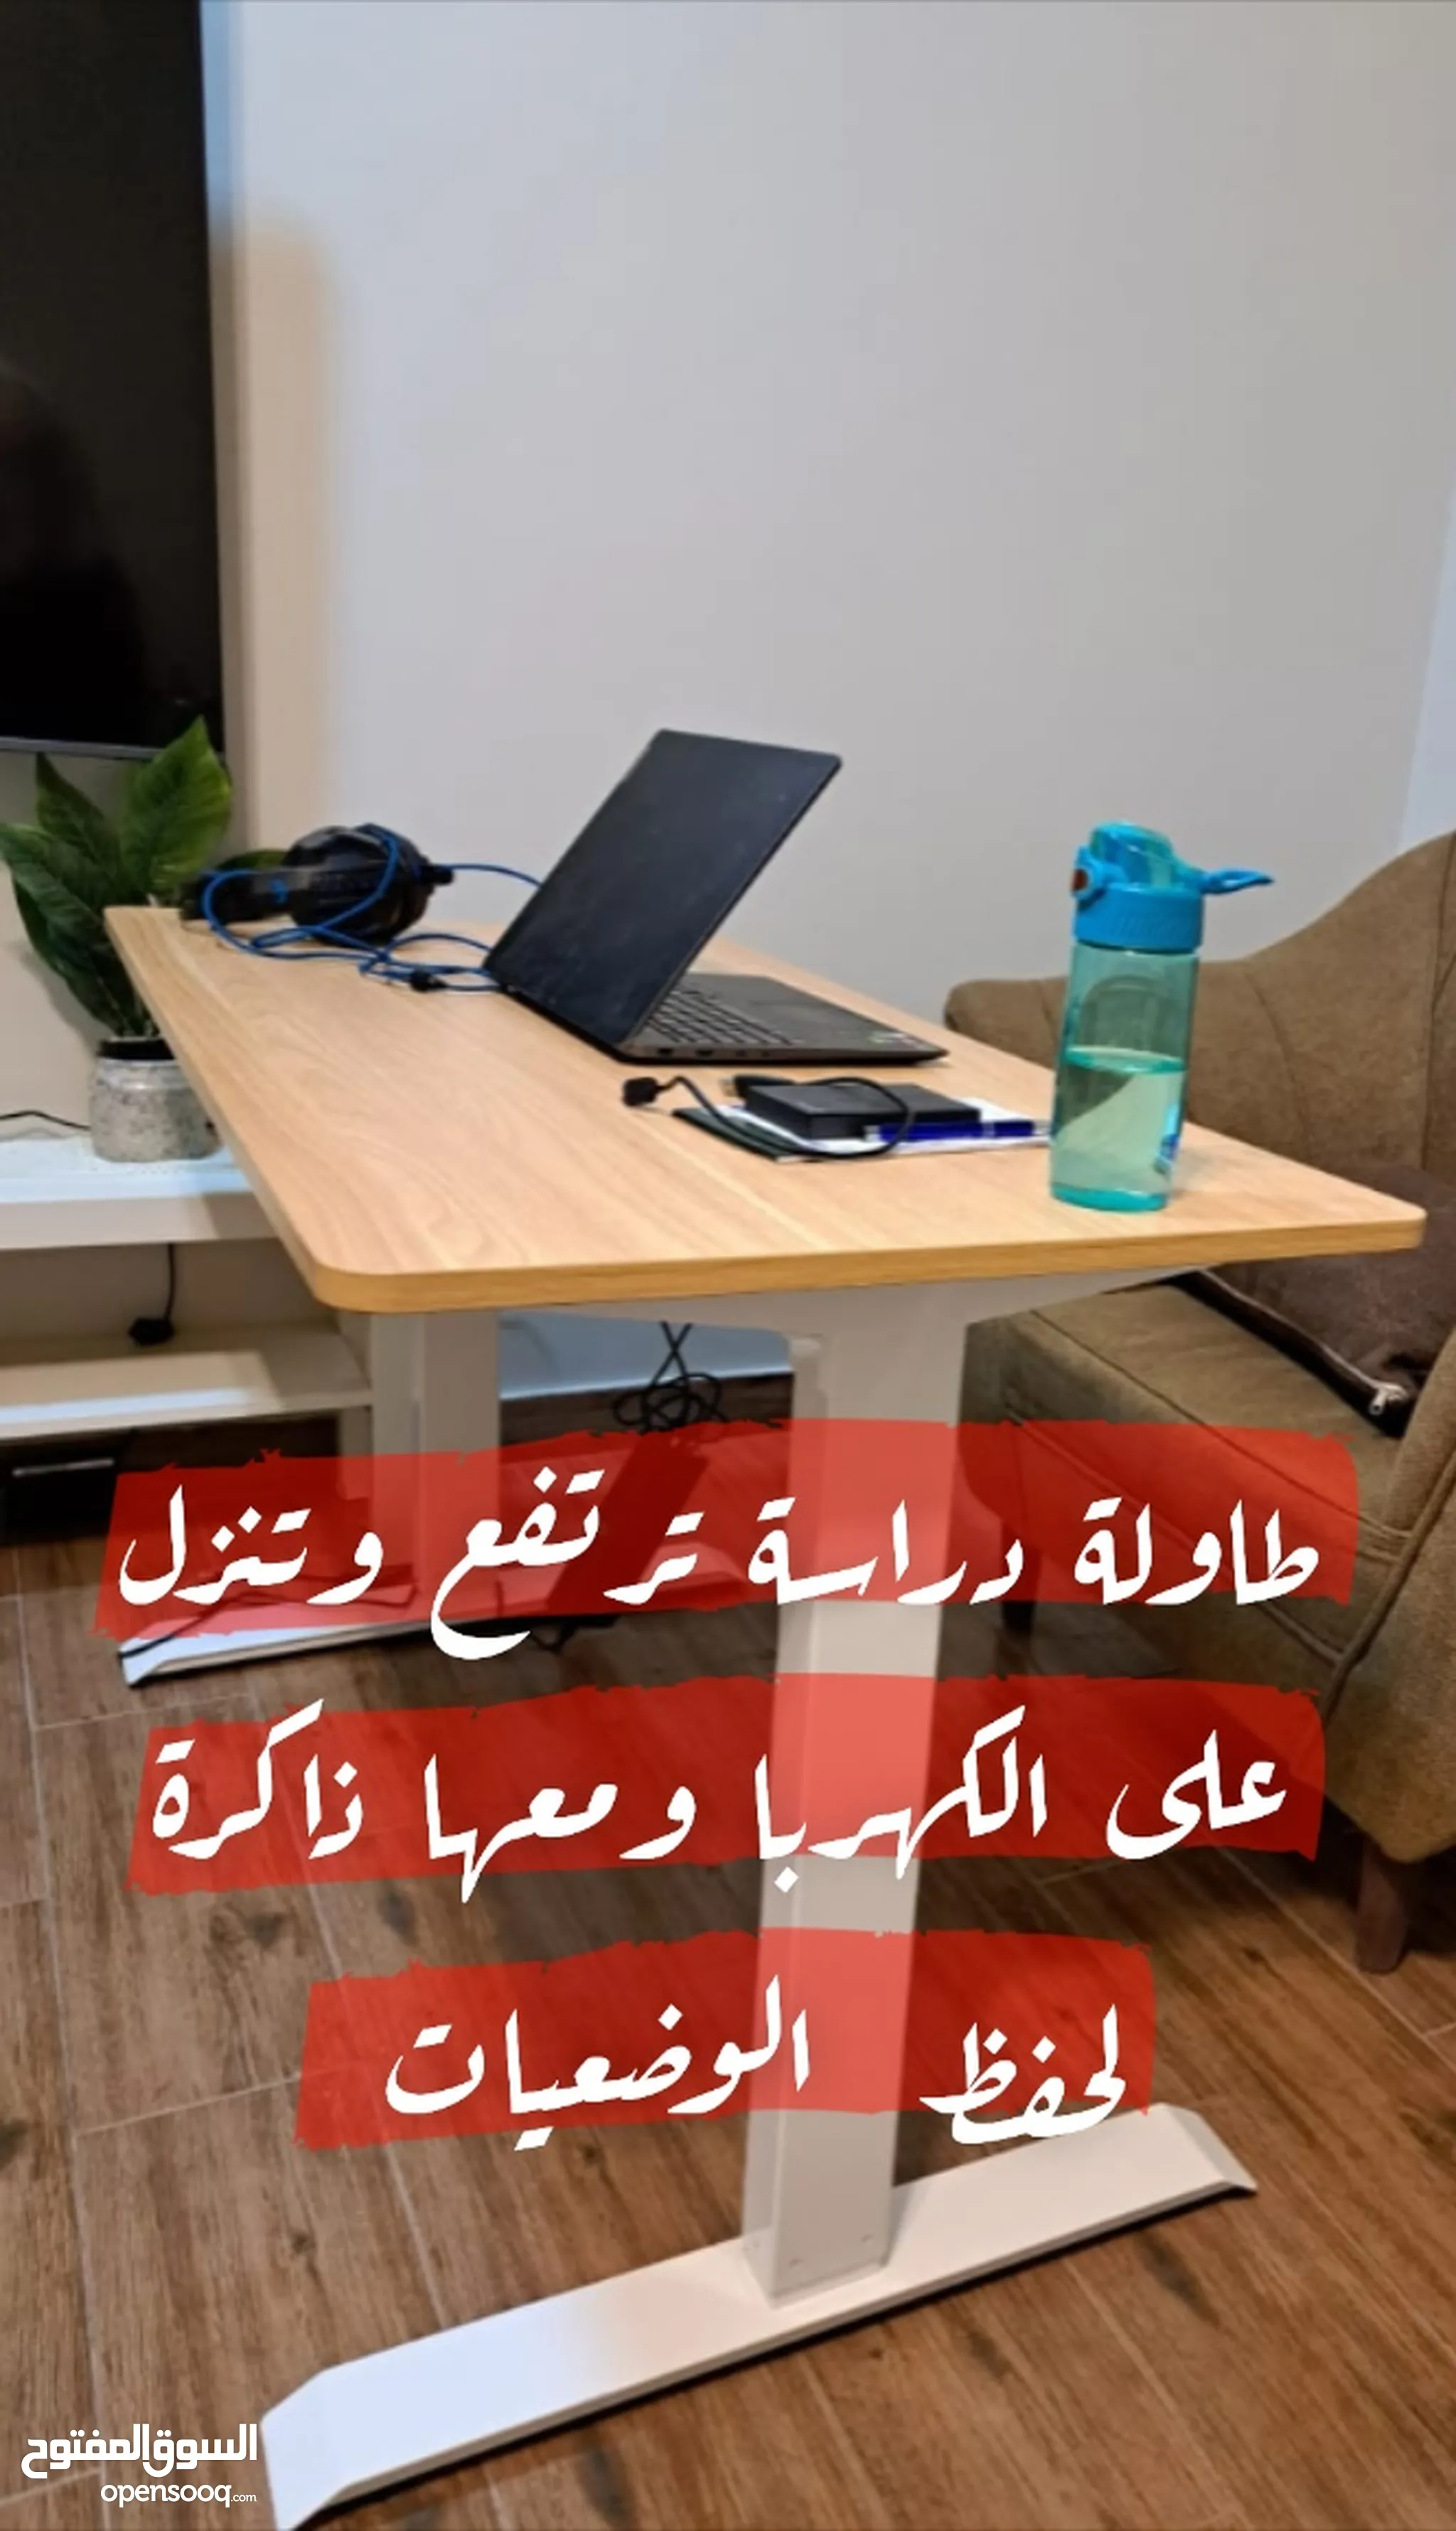 اثاث مكاتب للبيع : اثاث مكتبي : طاولات وكراسي : ارخص الاسعار في الرياض |  السوق المفتوح